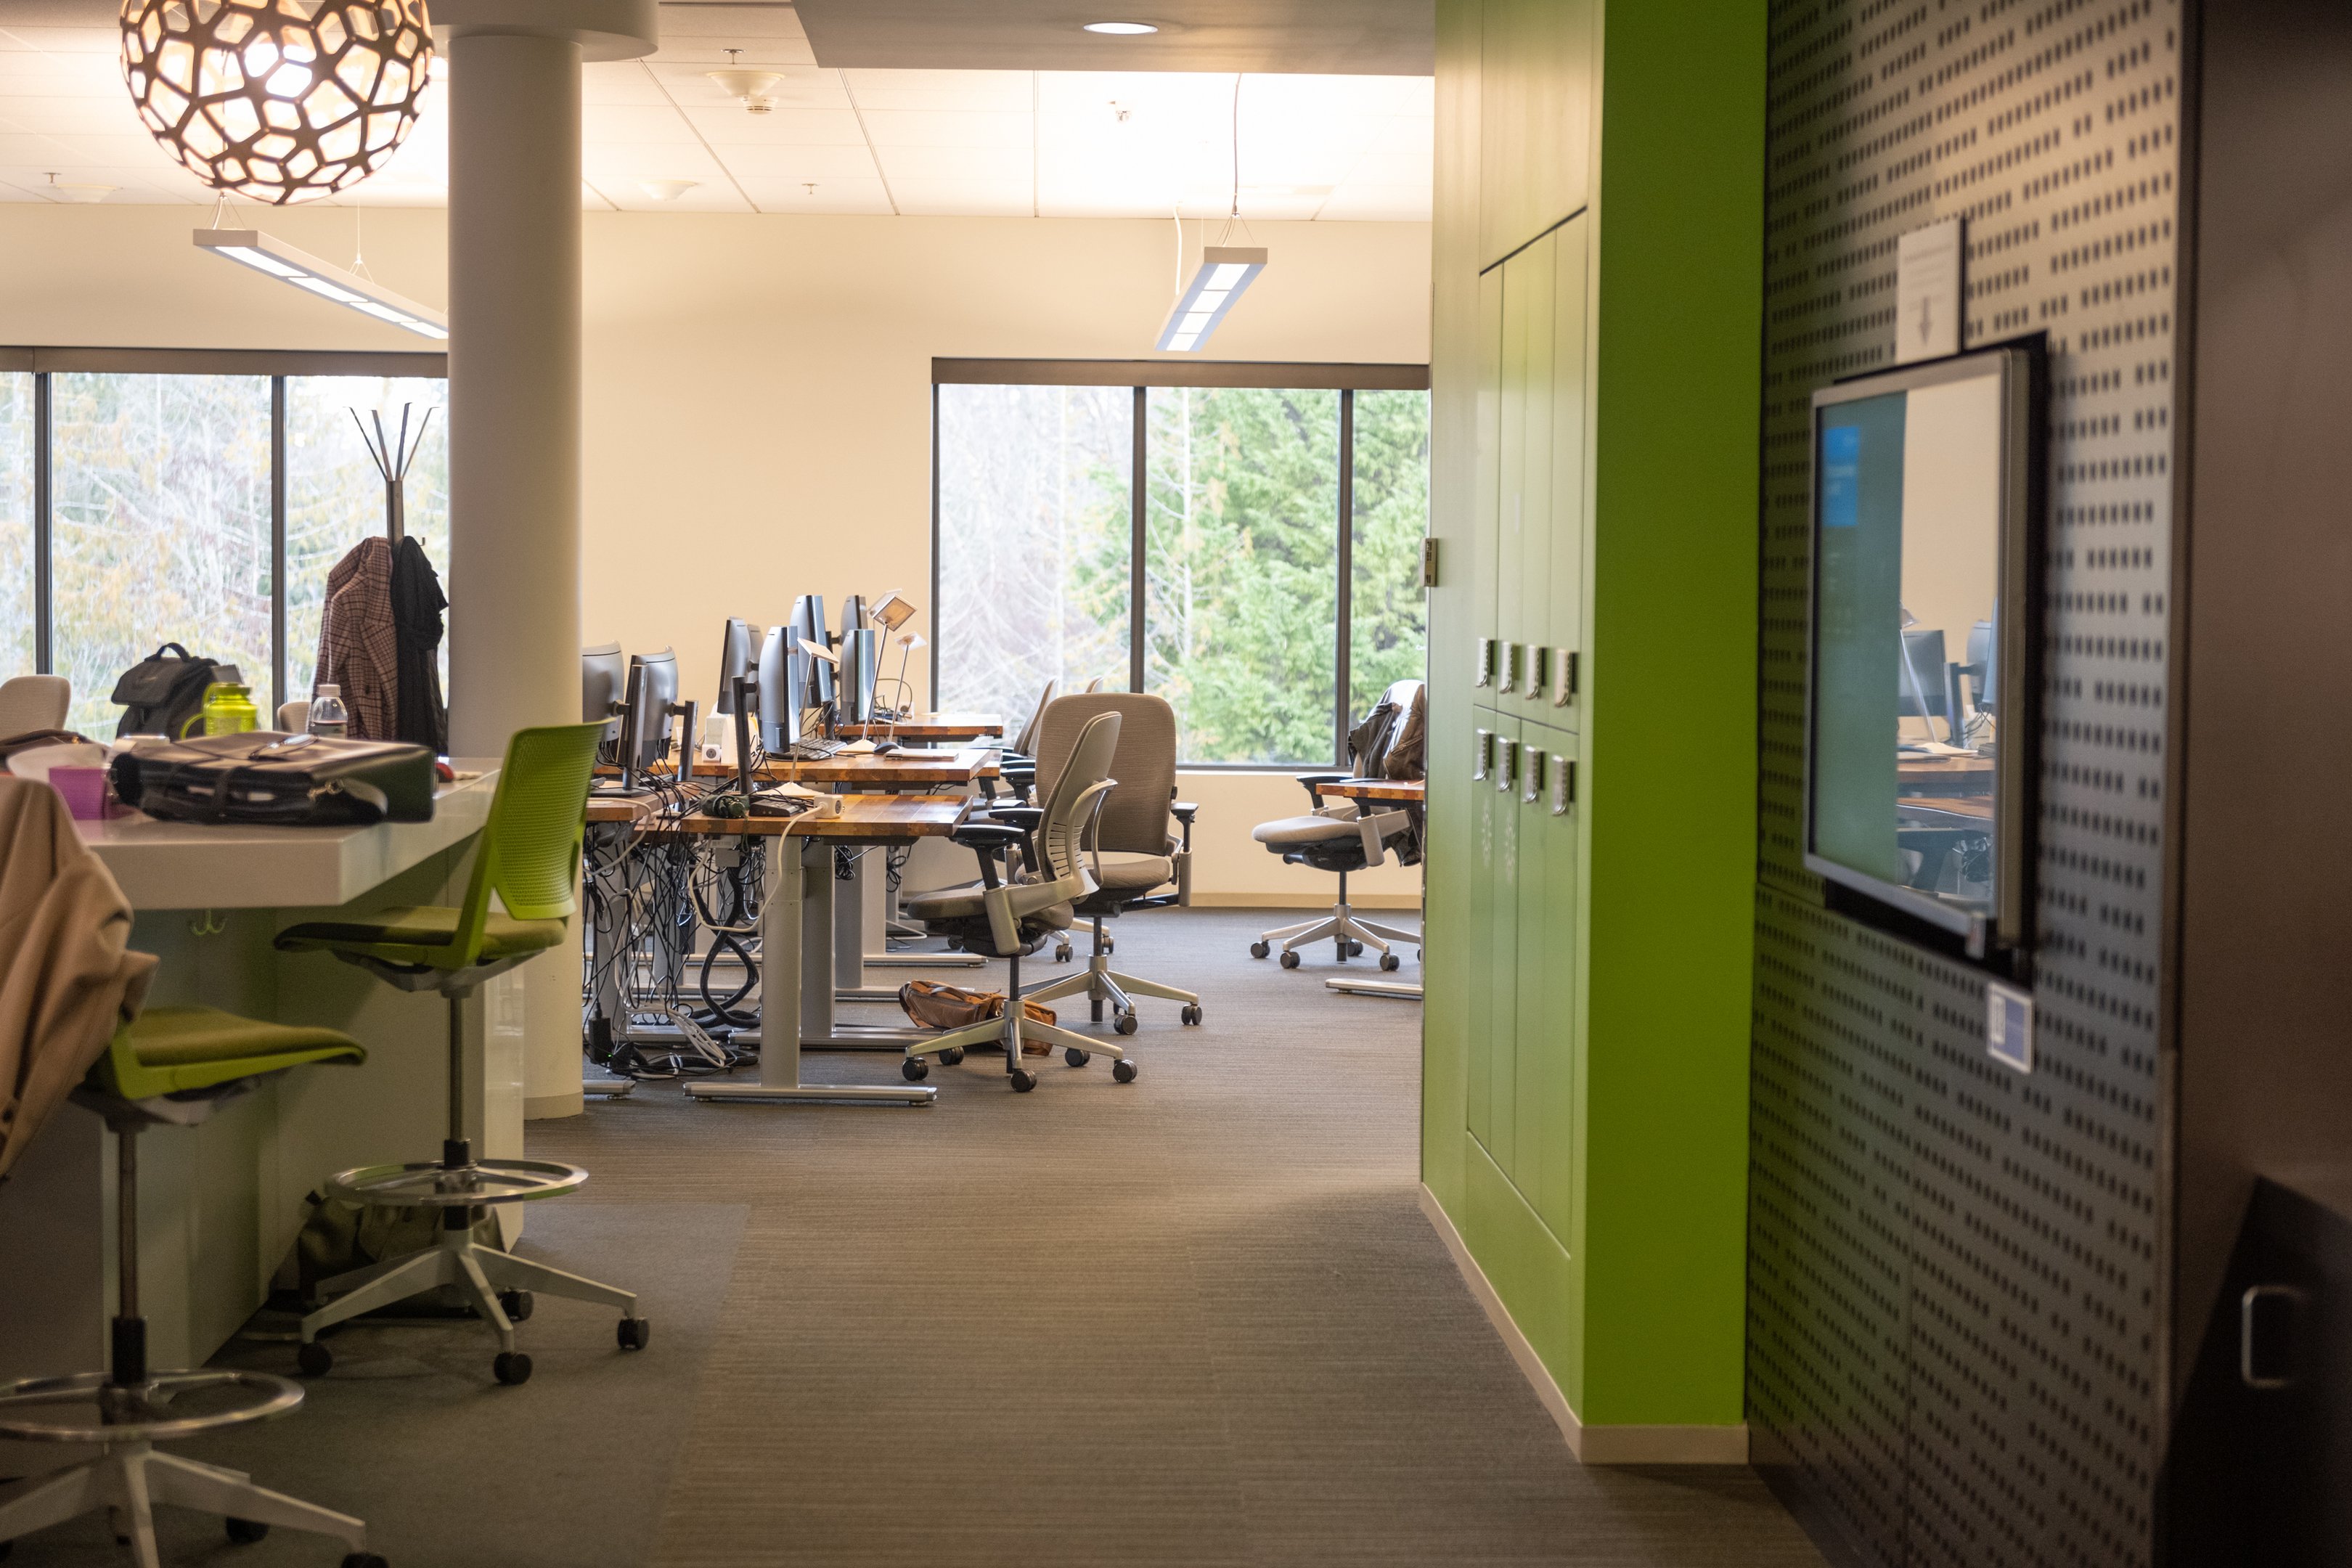 O complexo inclui um "Microsoft Garage", um espaço de inovação onde os funcionários podem experimentar e desenvolver novos projetos, promovendo a cultura de criatividade e empreendedorismo.